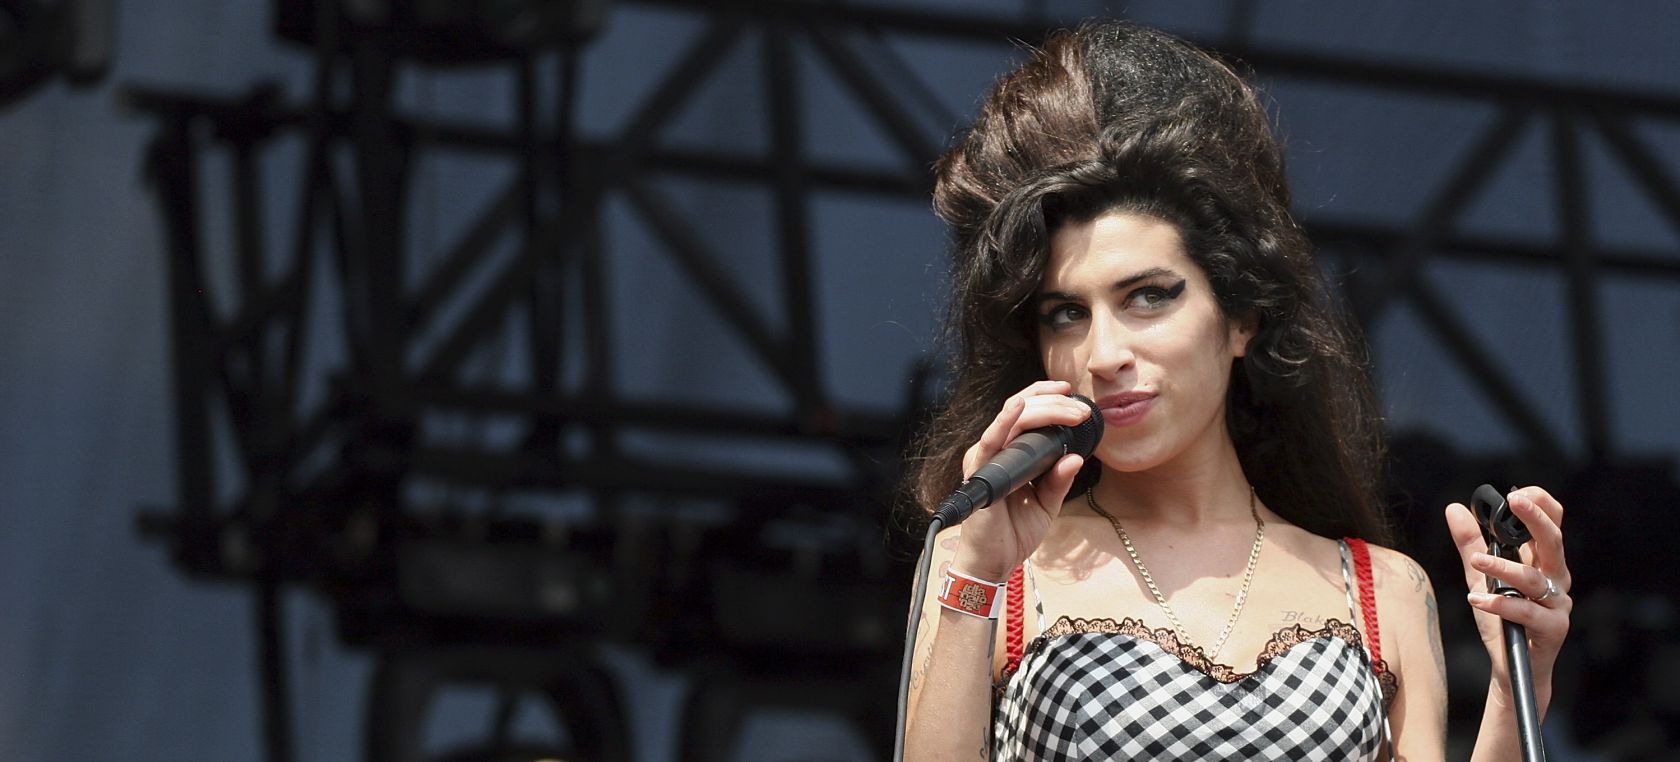 ¿Qué le pasó a Amy Winehouse? La historia de una muerte prematura que conmocionó al mundo